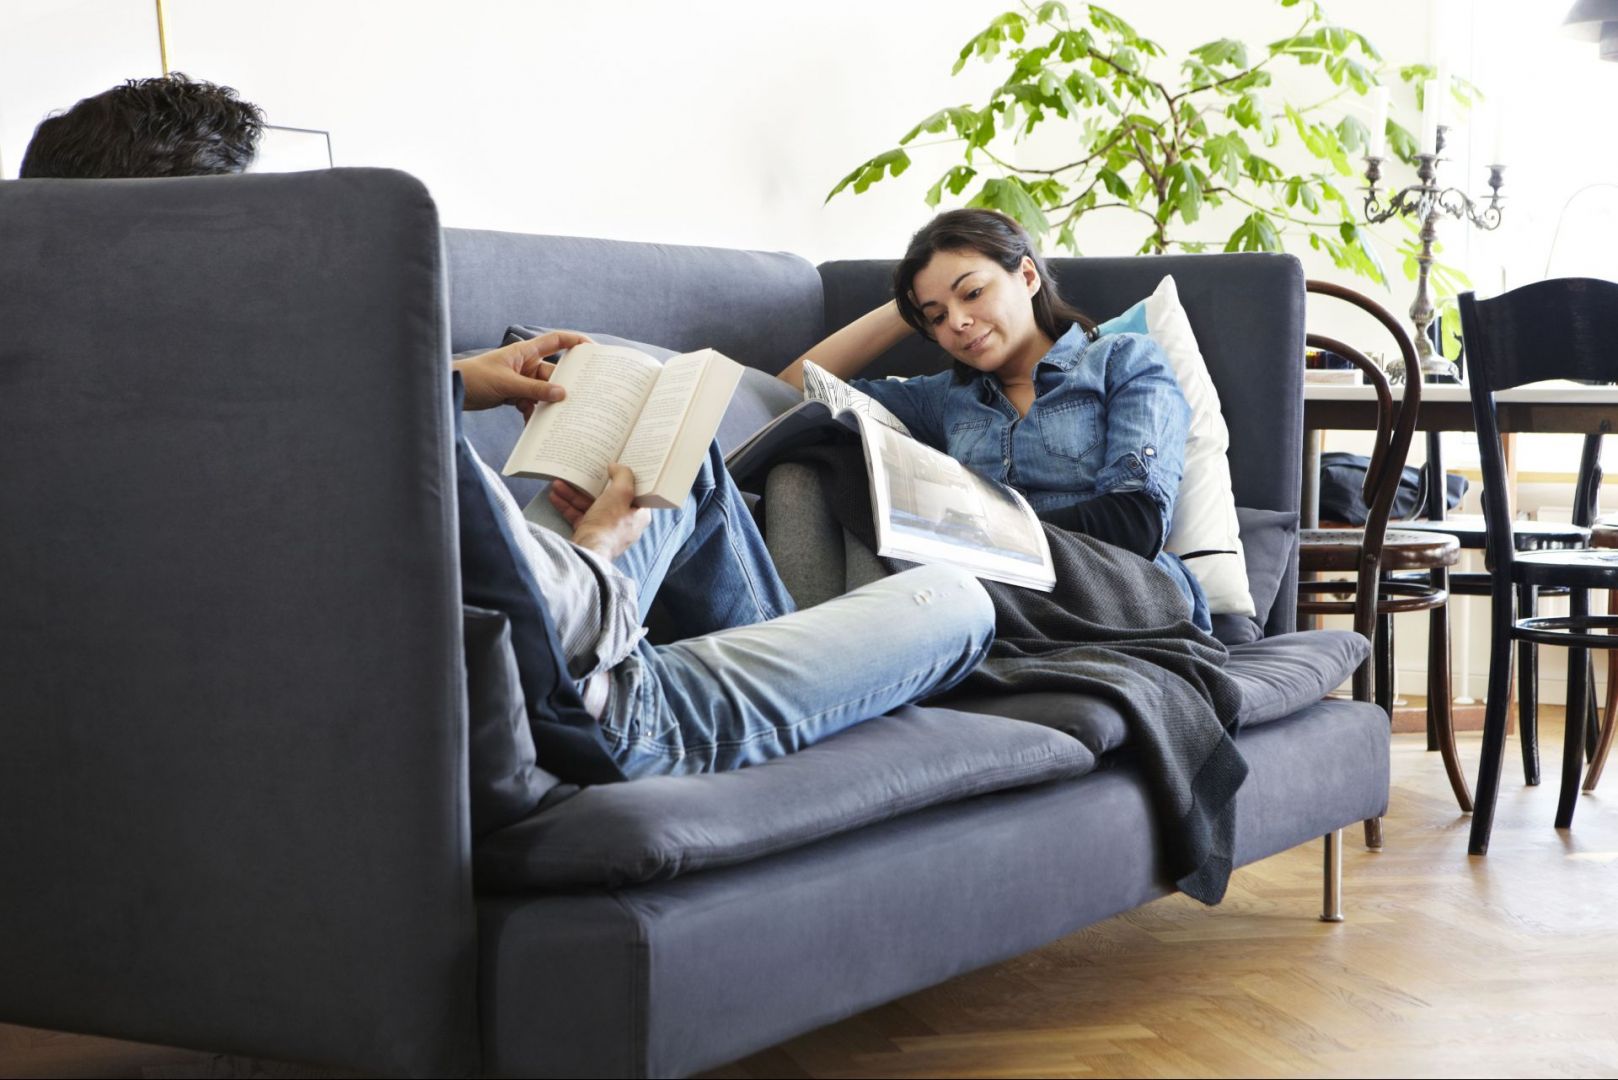 Możesz zaprojektować sofę modularną SÖDERHAMN tak, aby odpowiadała Twojemu sposobowi na relaks. 
Fot. IKEA